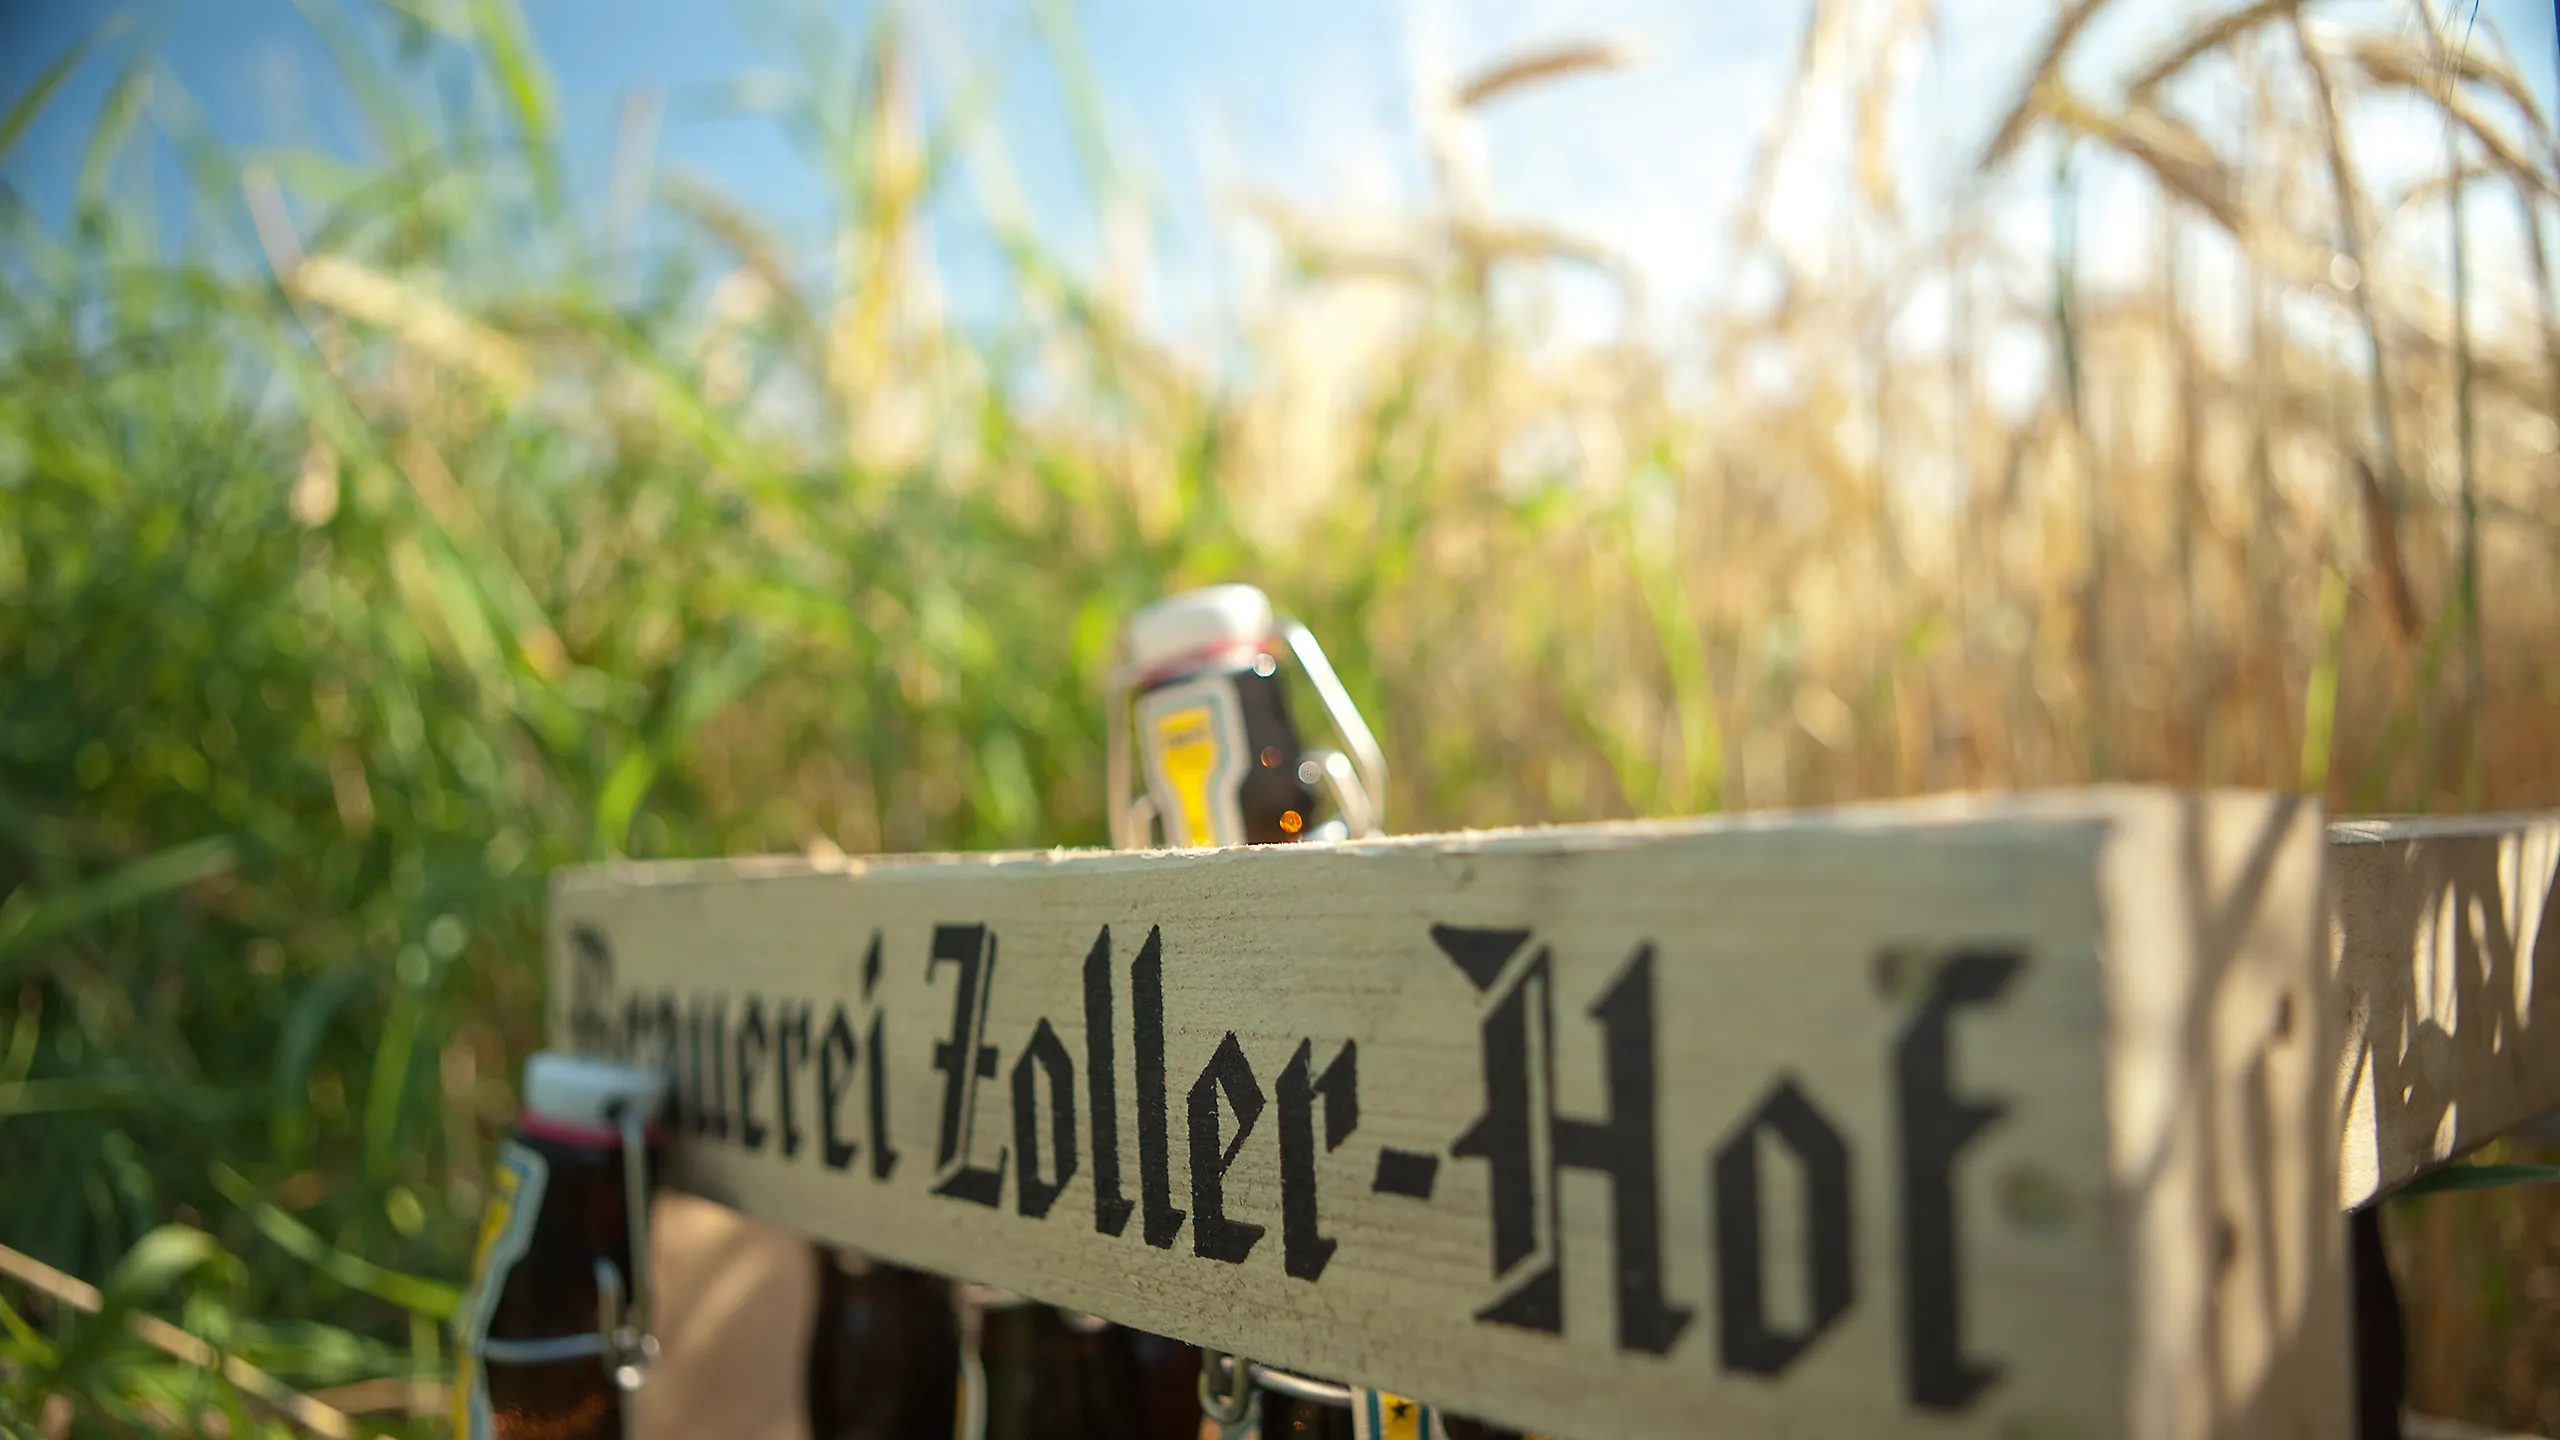 Holzkiste Brauerei Zoller-Hof mit Bier auf Weizenfeld